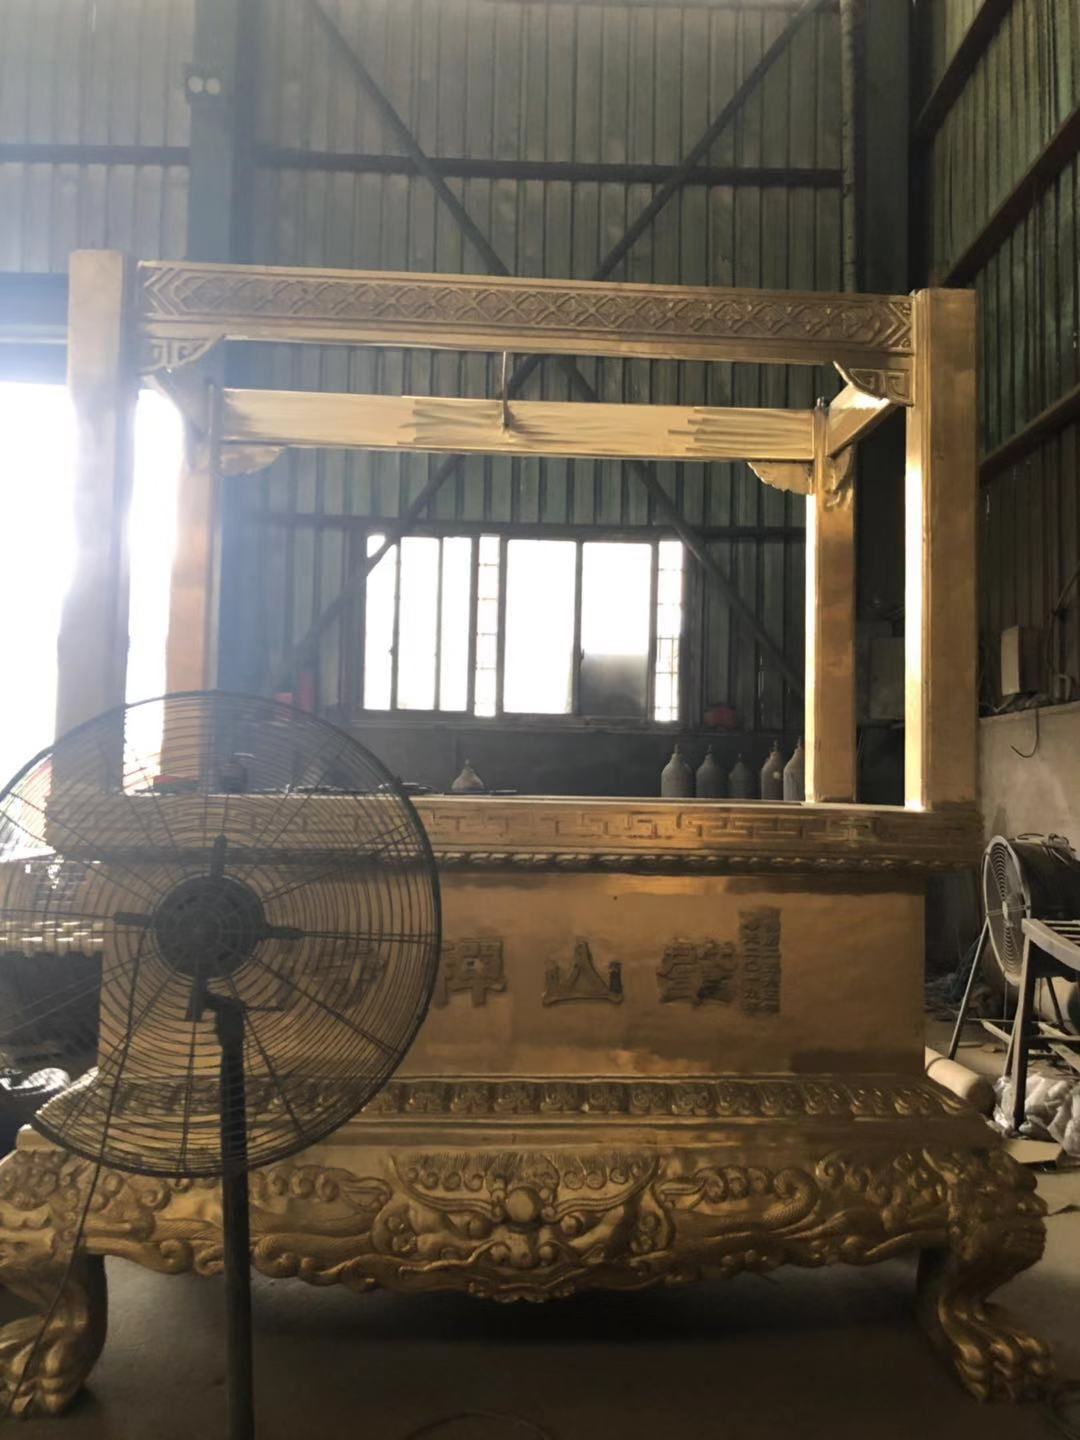 香炉 温州慈宏生产厂家批发公墓香炉 长方形八龙柱香炉 铸铁香炉